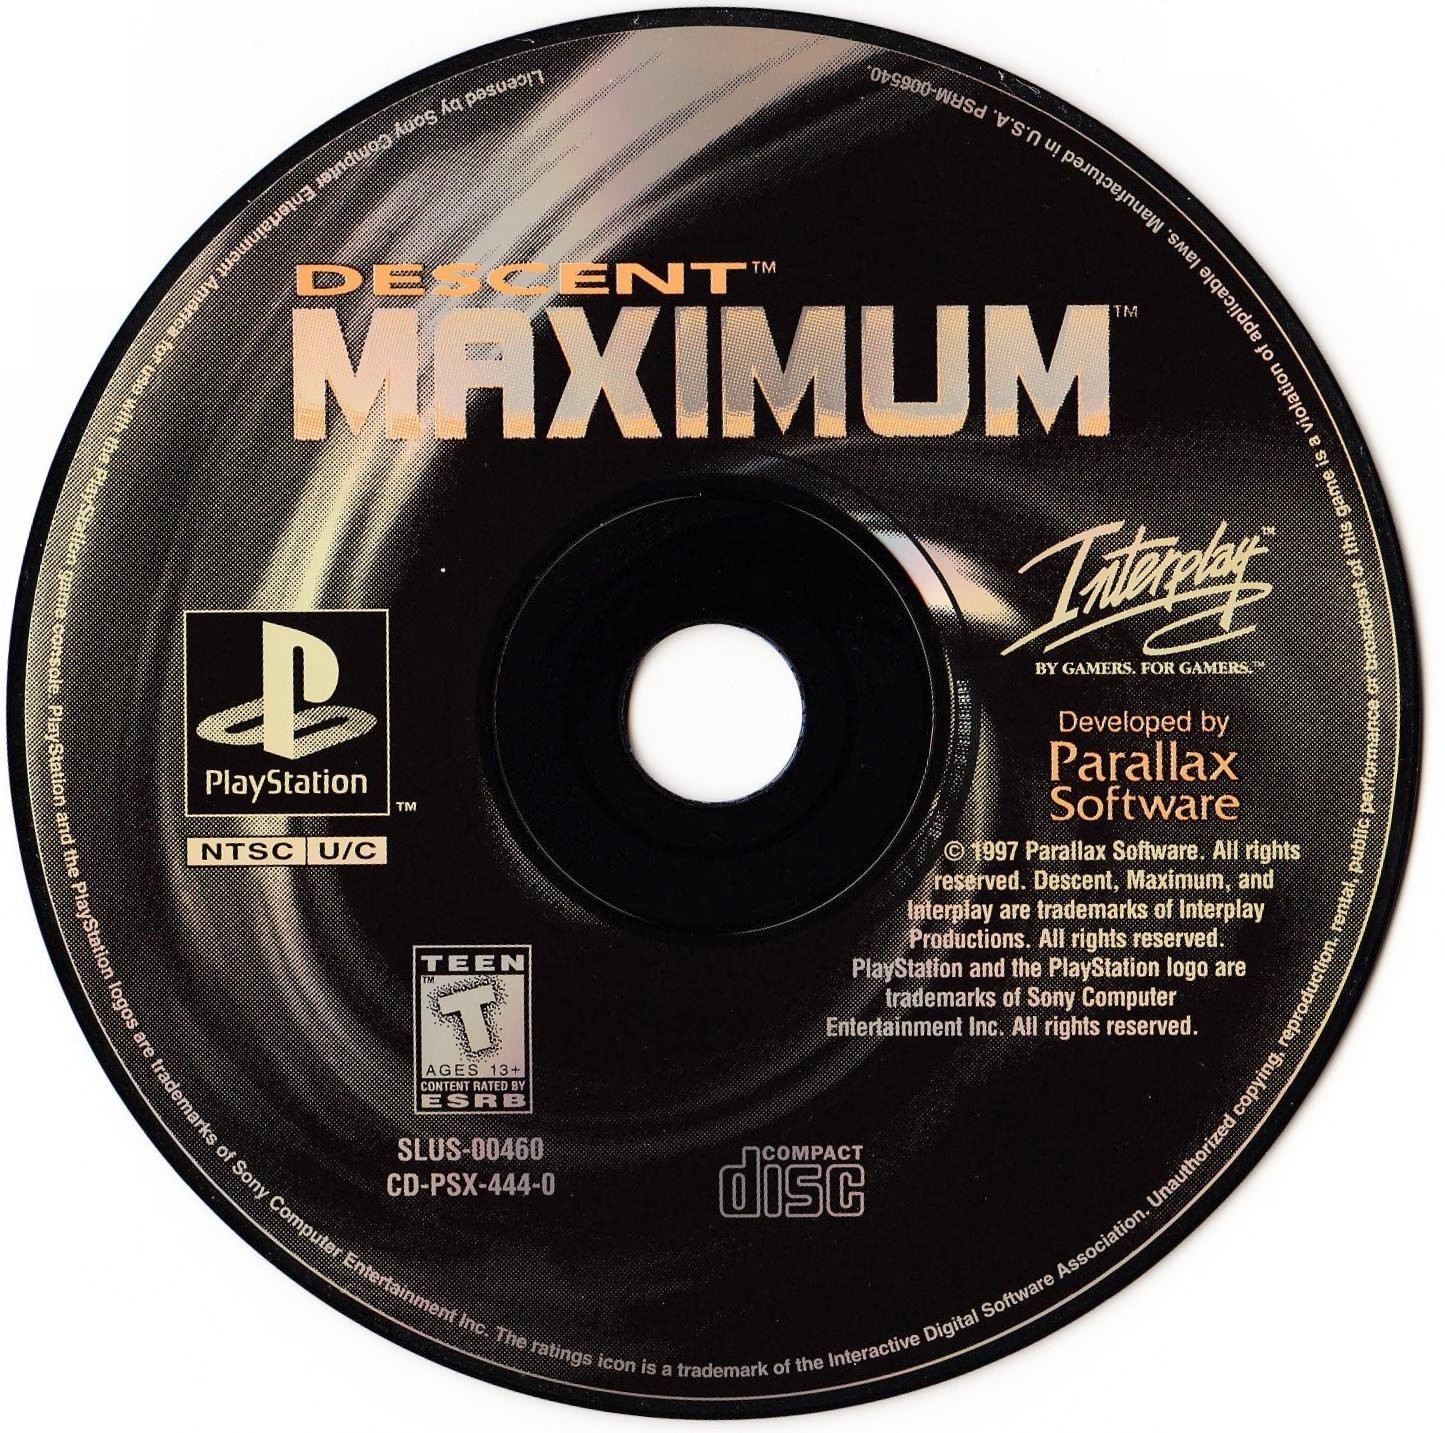 Descent Maximum PSX cover